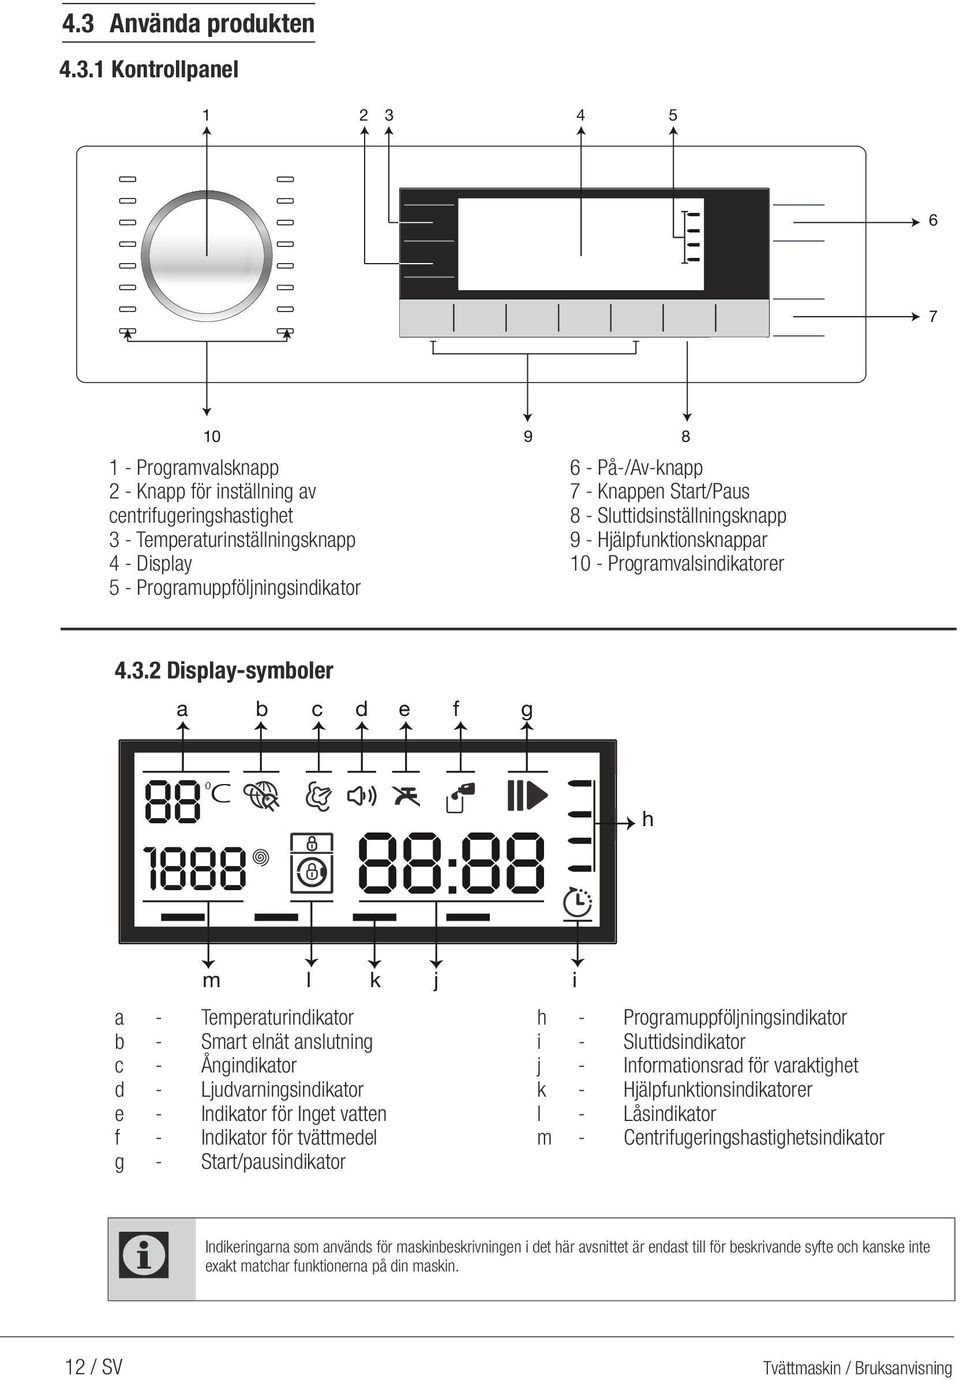 2 Display-symboler a b c d e f g 88 0 1888 88:88 h m a - Temperaturindikator b - Smart elnät anslutning c - Ångindikator d - Ljudvarningsindikator e - Indikator för Inget vatten f - Indikator för